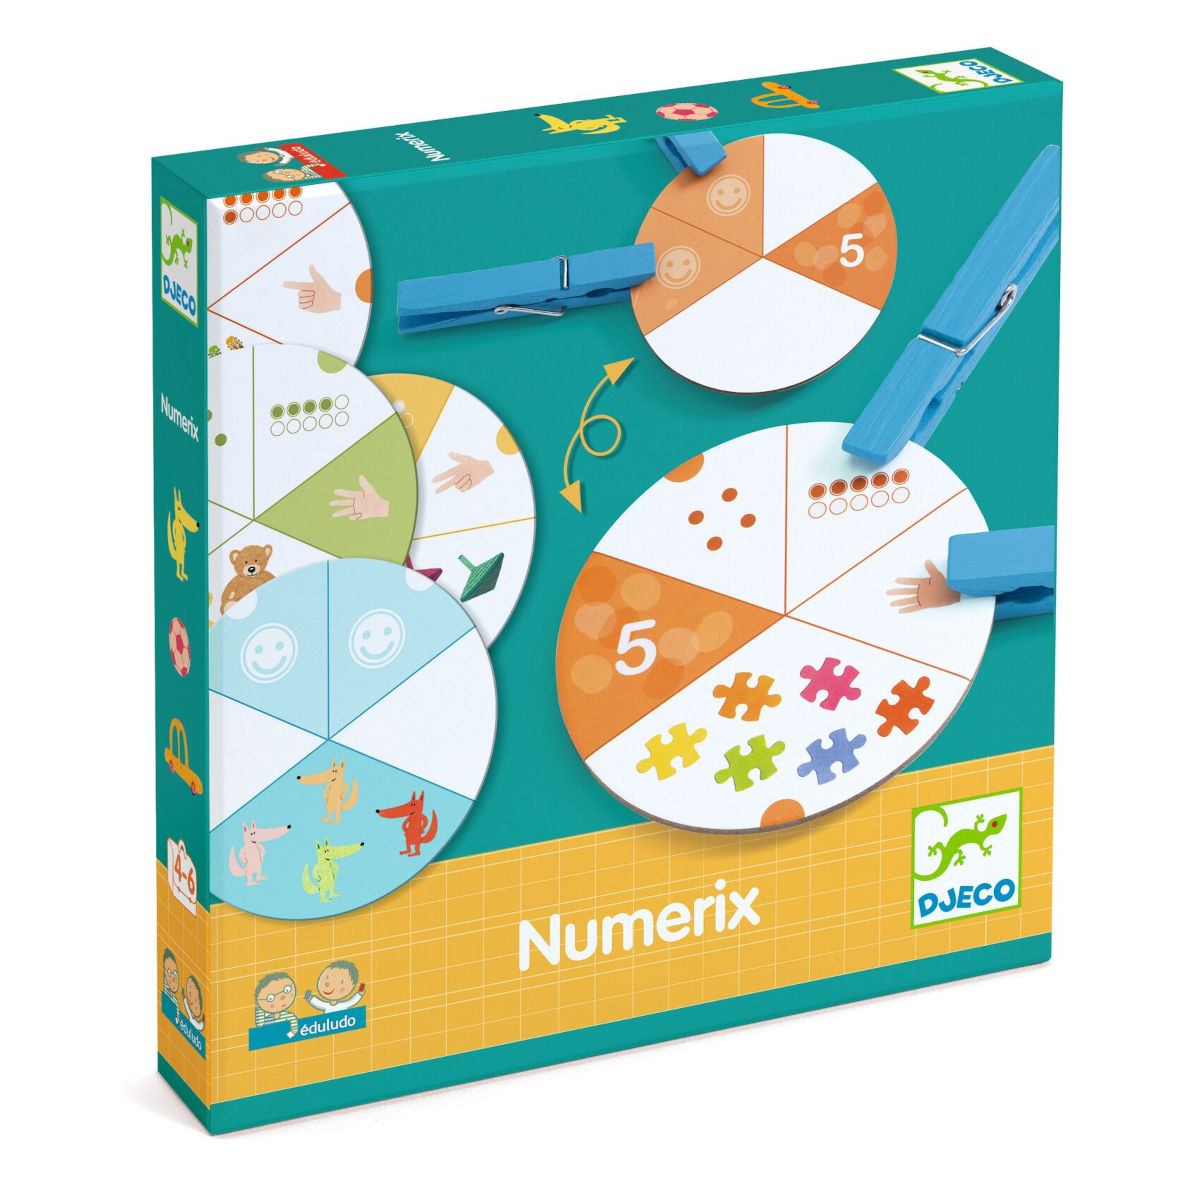 Numerix - Imparo a Contare - Djeco